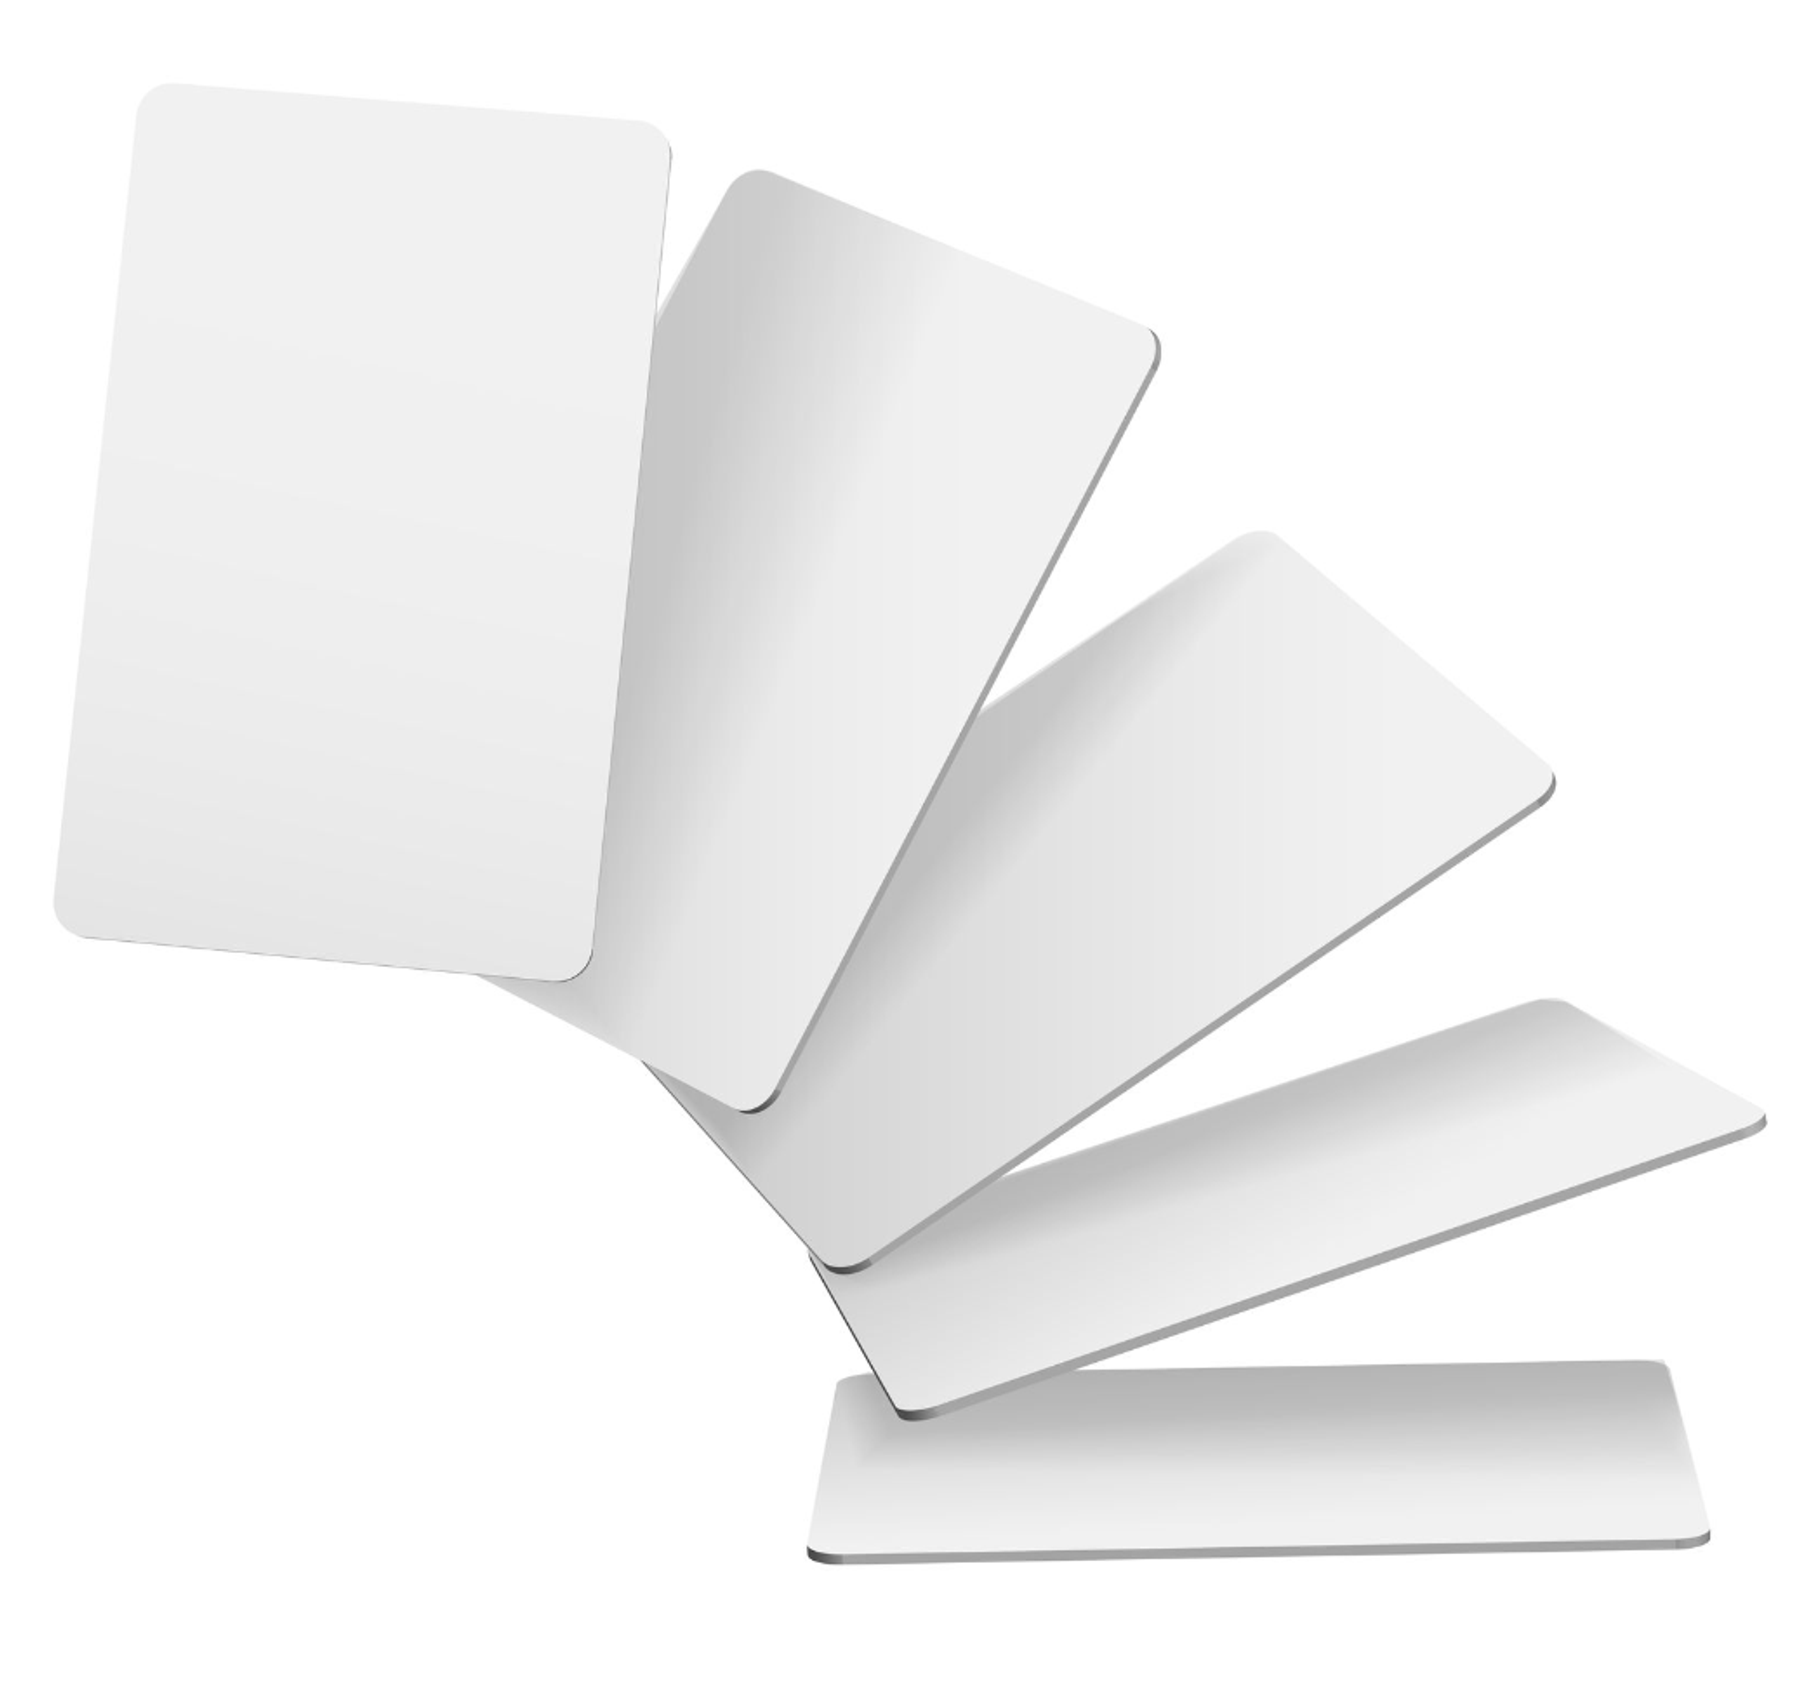 이미지 = 프리픽(https://kr.freepik.com/free-vector/realistic-vector-icon-illustration-flying-blank-playing-cards-isolated-on-white-background_39514193.htm#query=카드&position=1&from_view=search&track=sph)